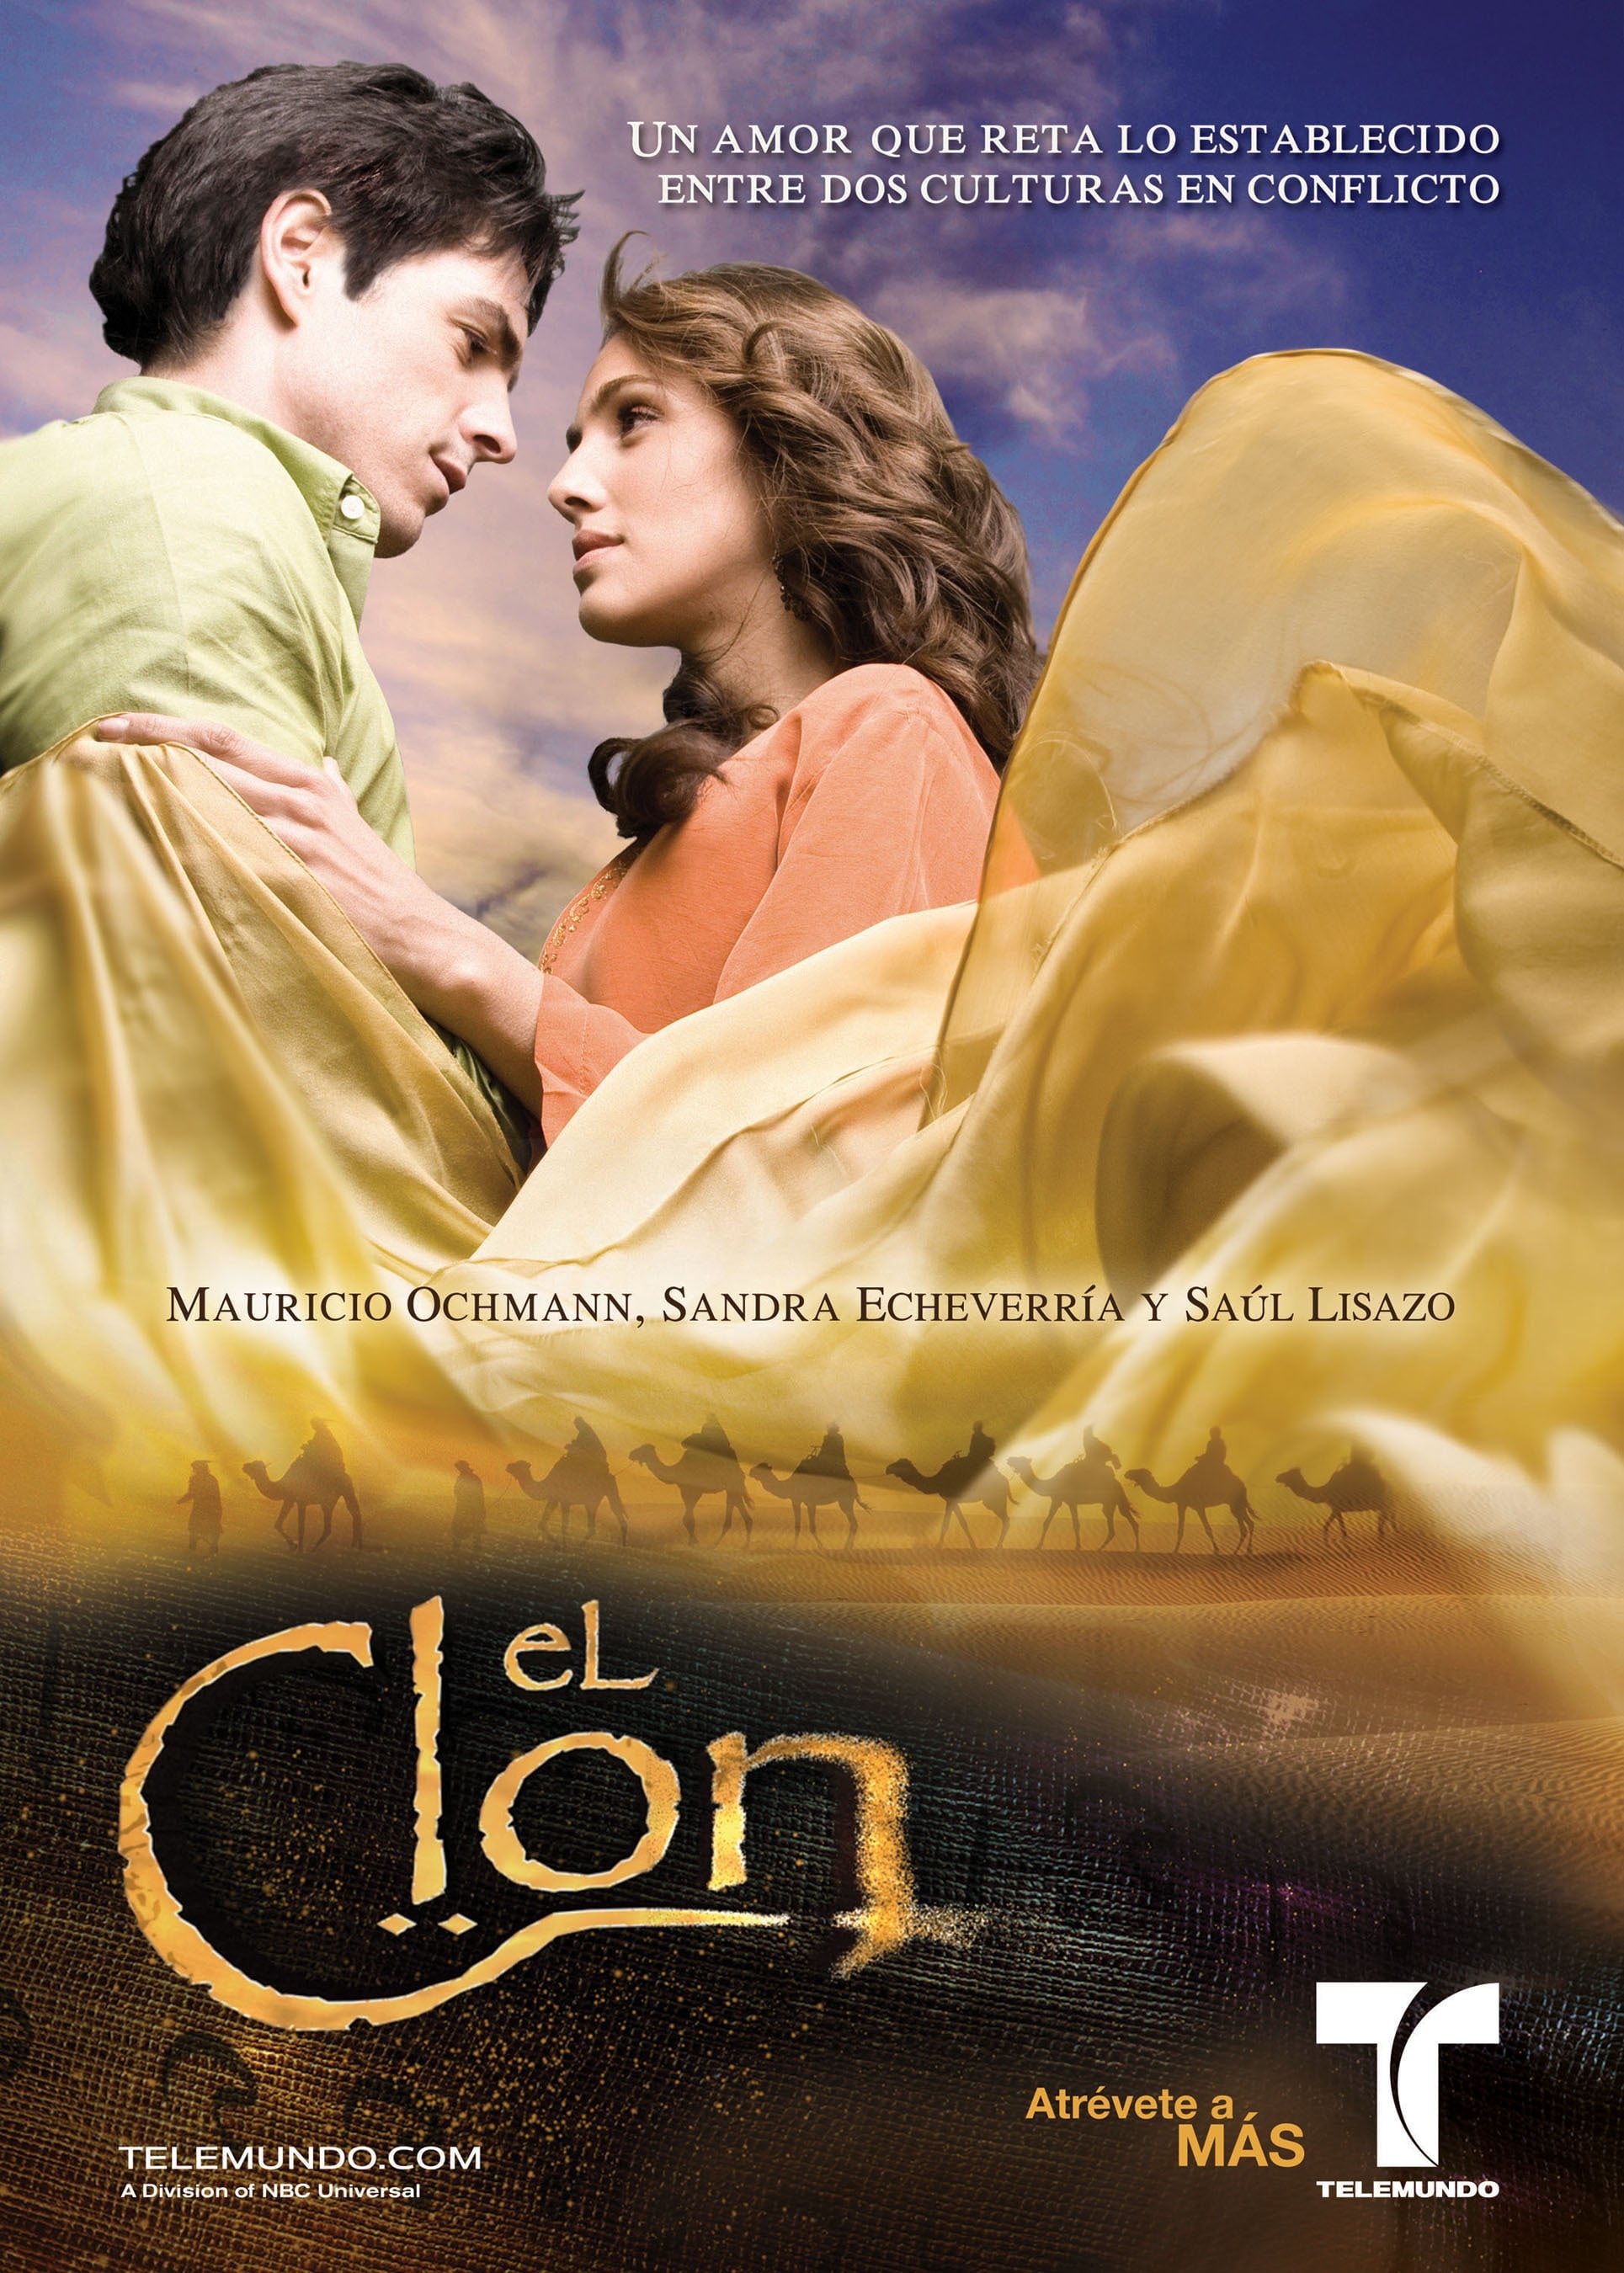 El Clon (2010)